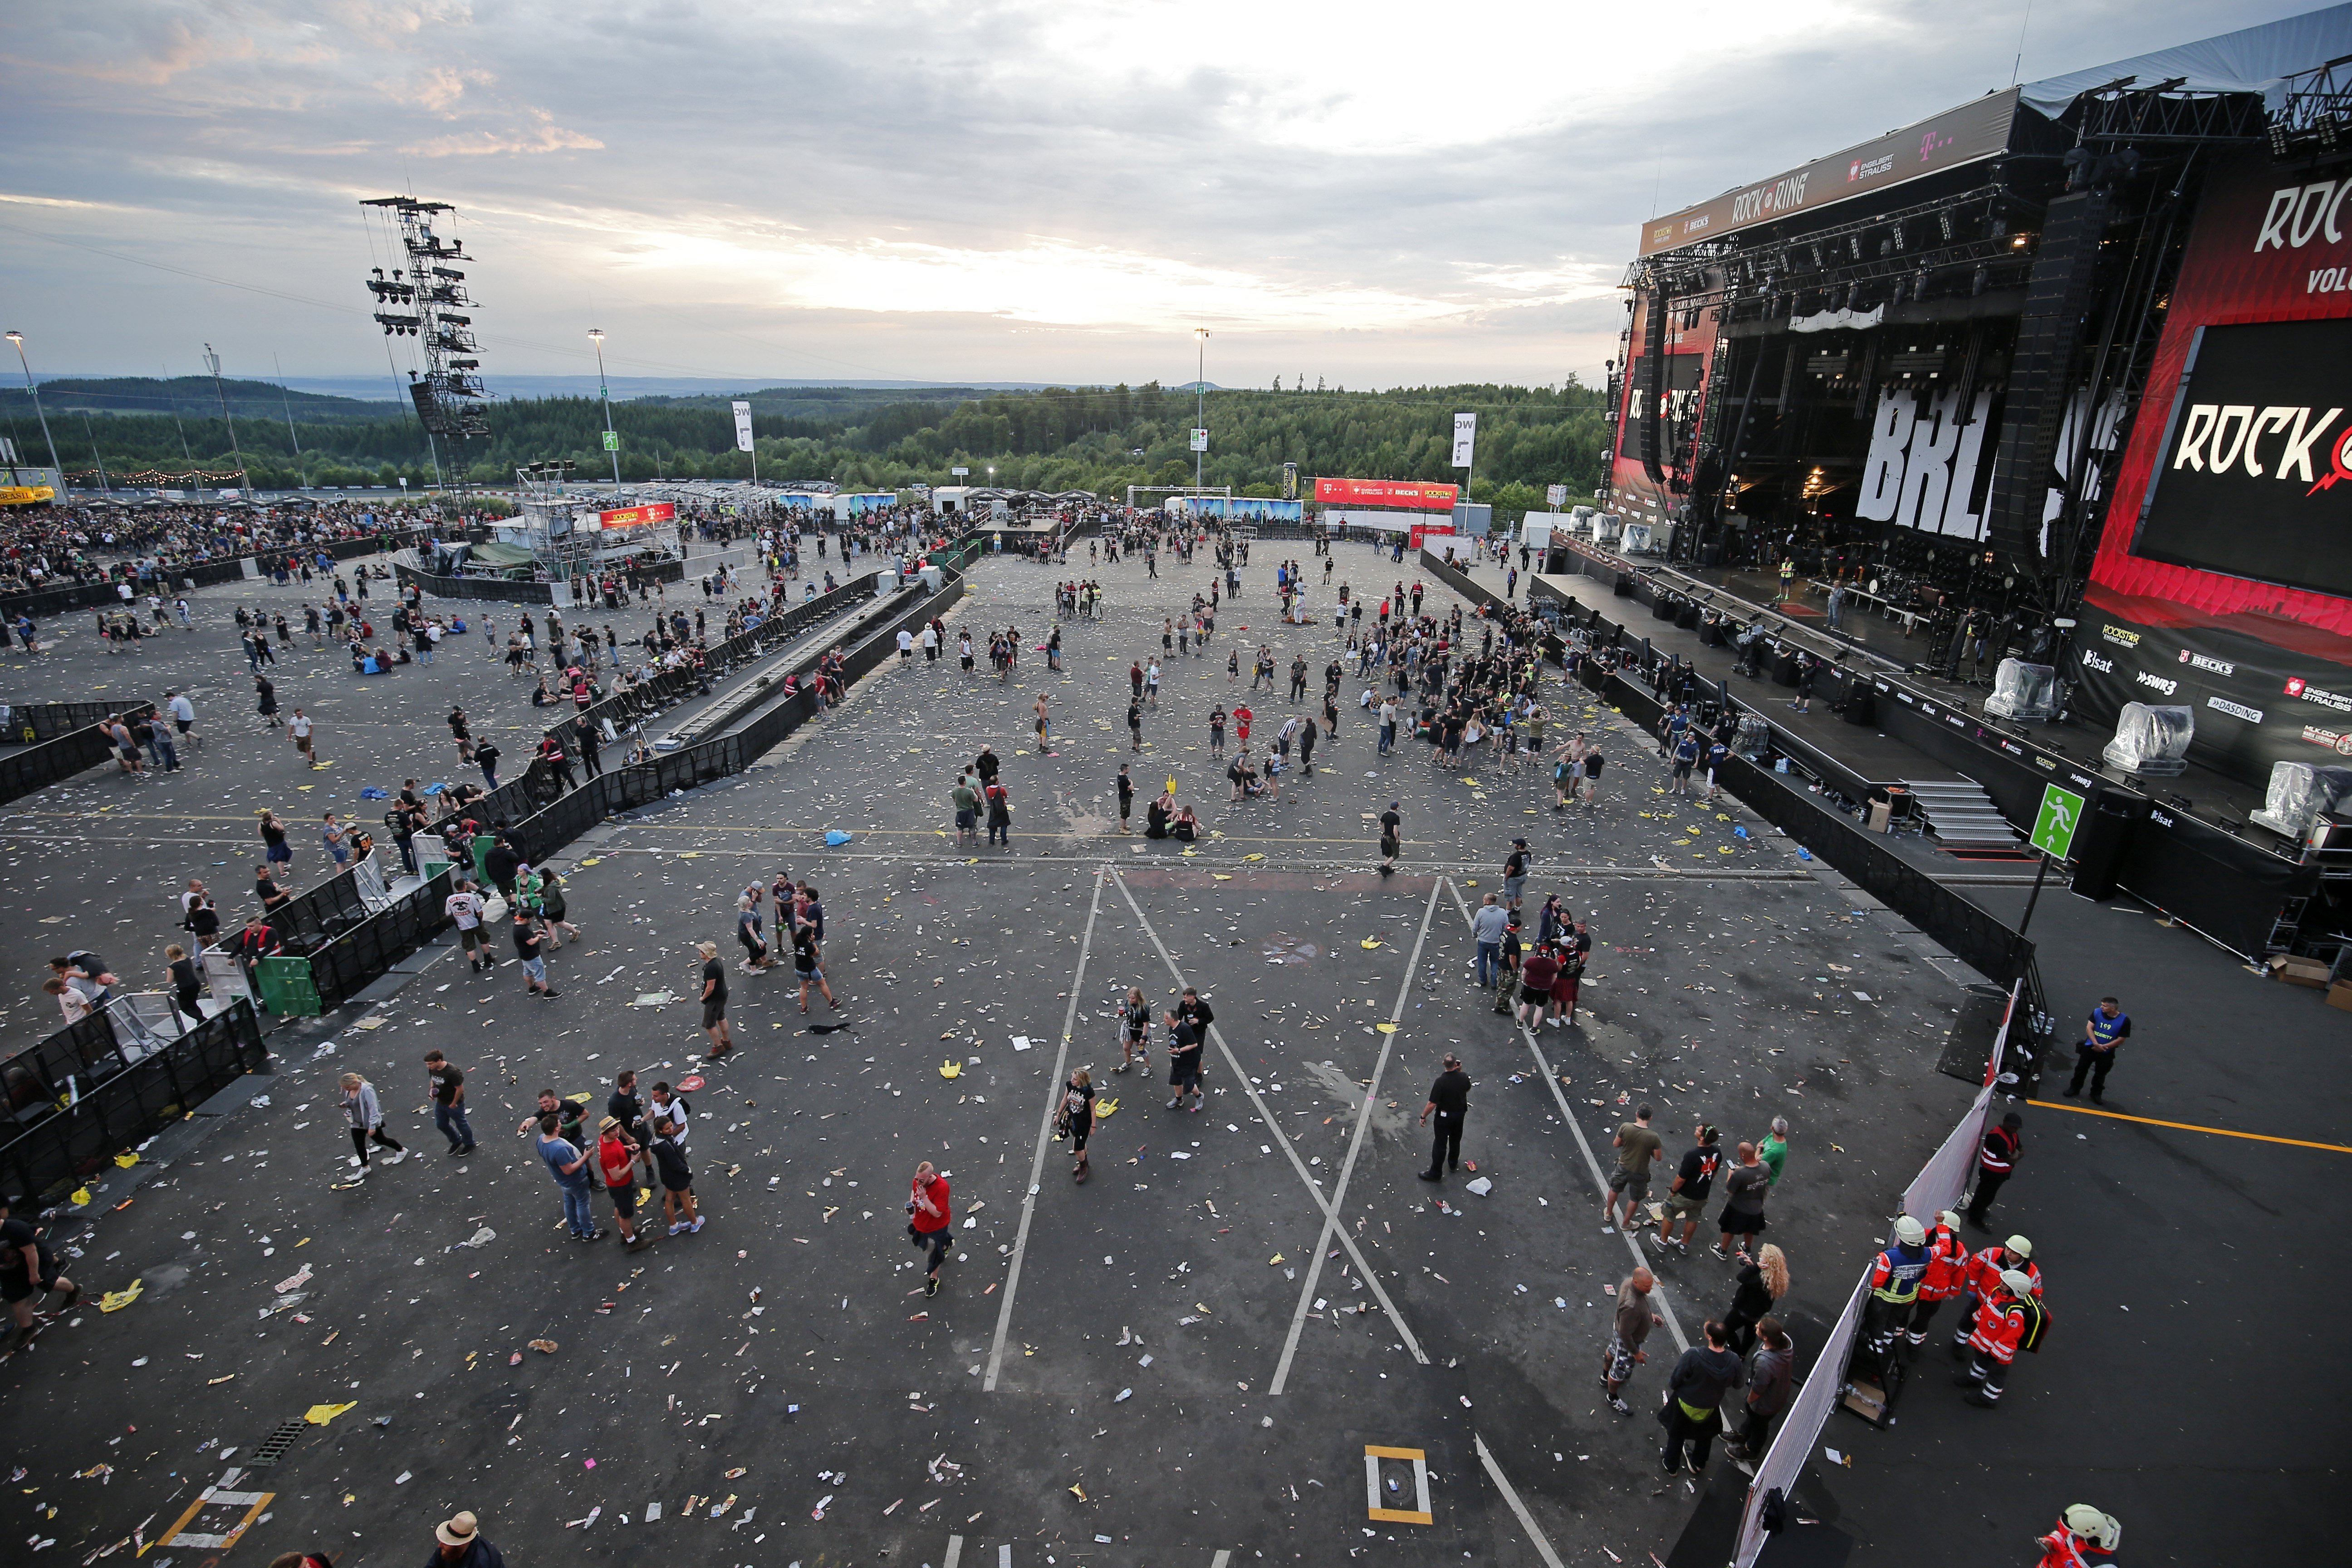 Es reprèn el festival de rock a Alemanya després de suspendre'l per alarma terrorista